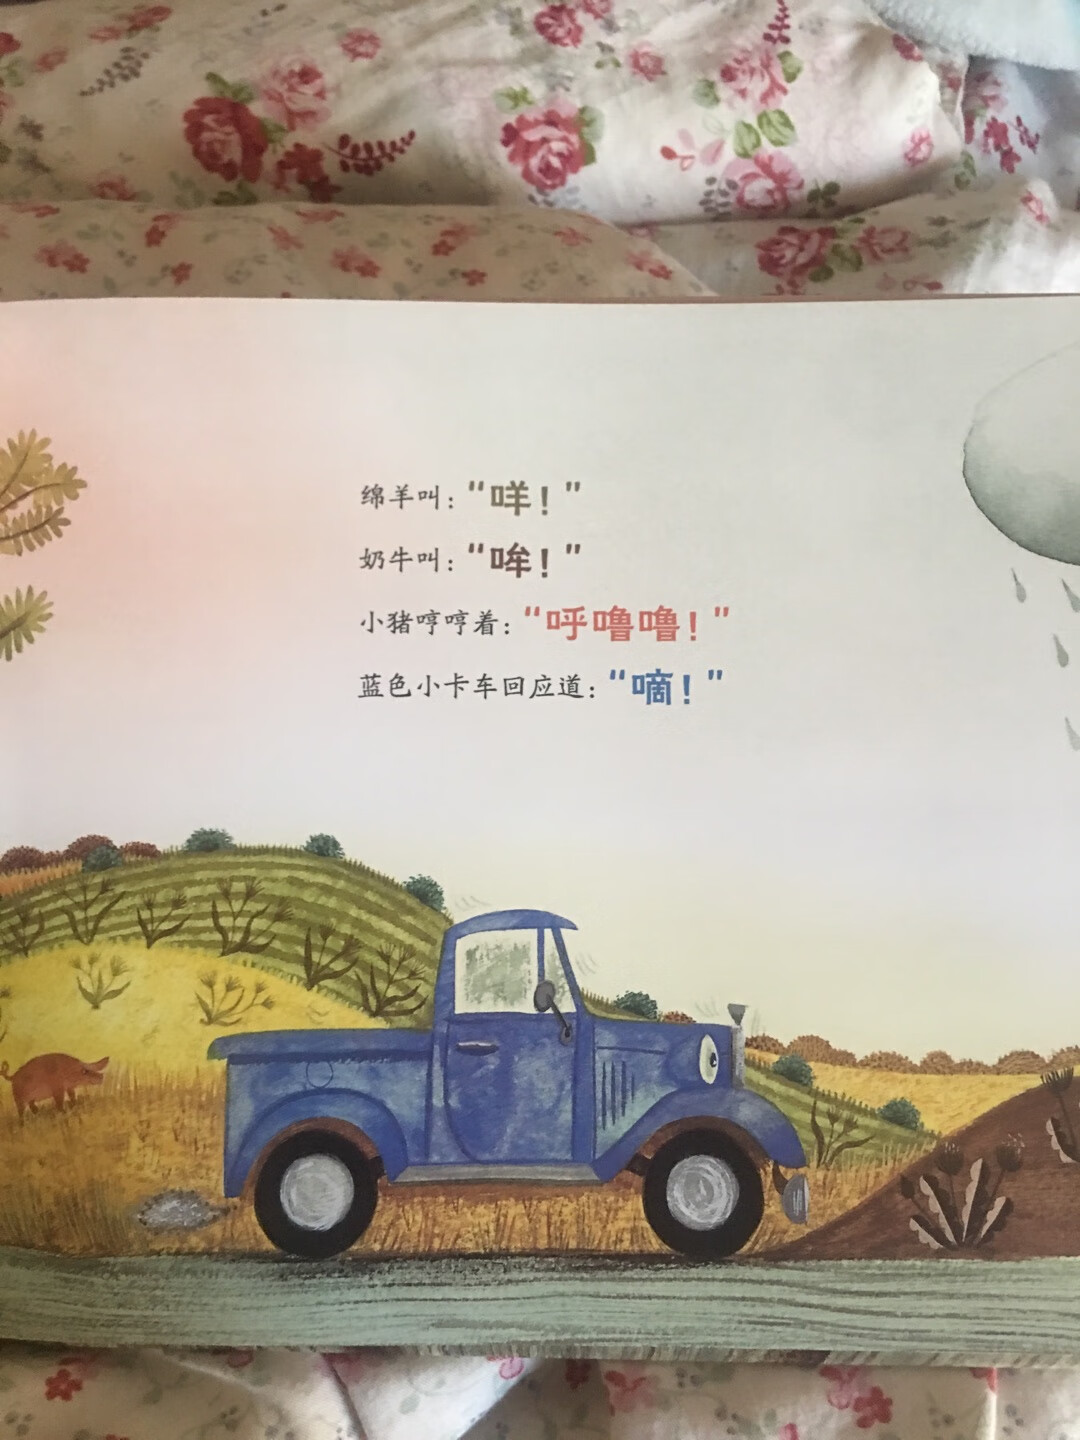 趁着搞活动买的，非常好。蓝色小卡车这个书小孩给喜欢。书的纸质真心不错。印刷的字体大小合适。